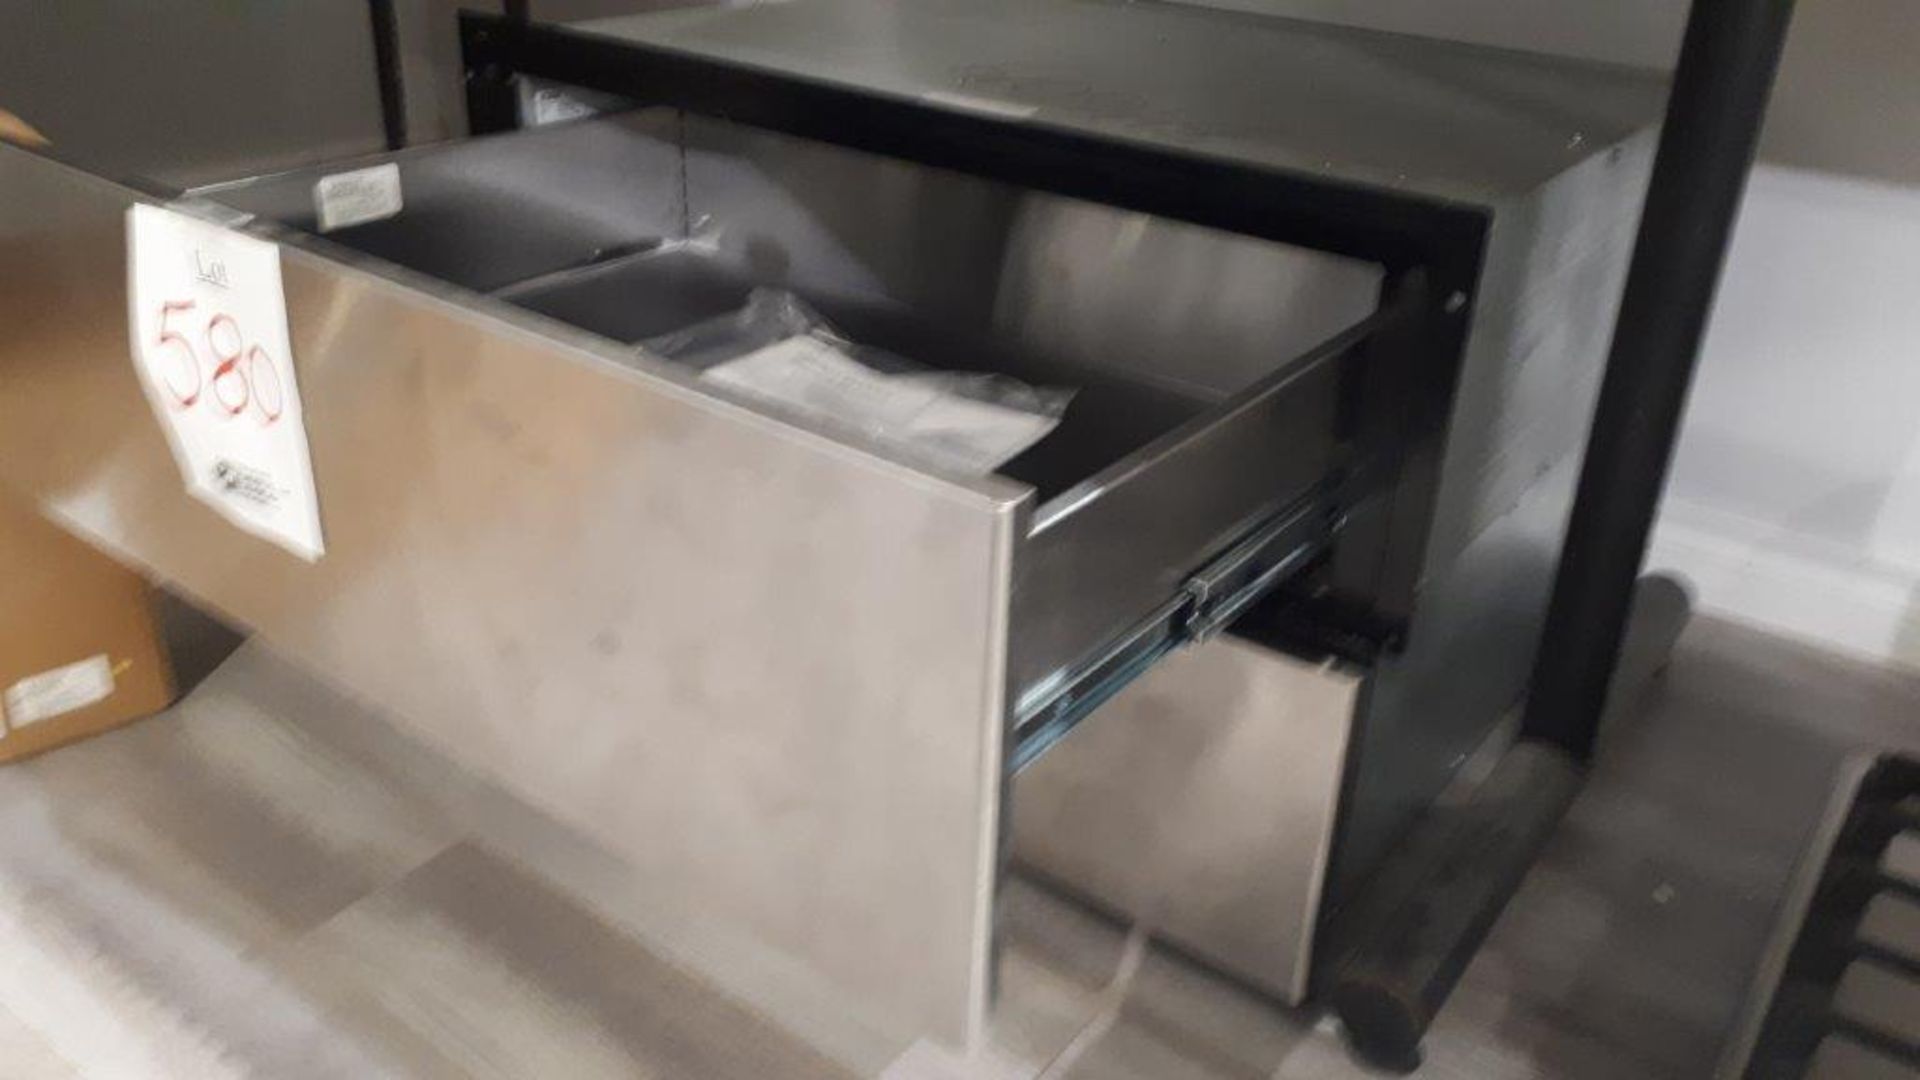 Bosch HSD5051UC 30” stainless steel storage drawer